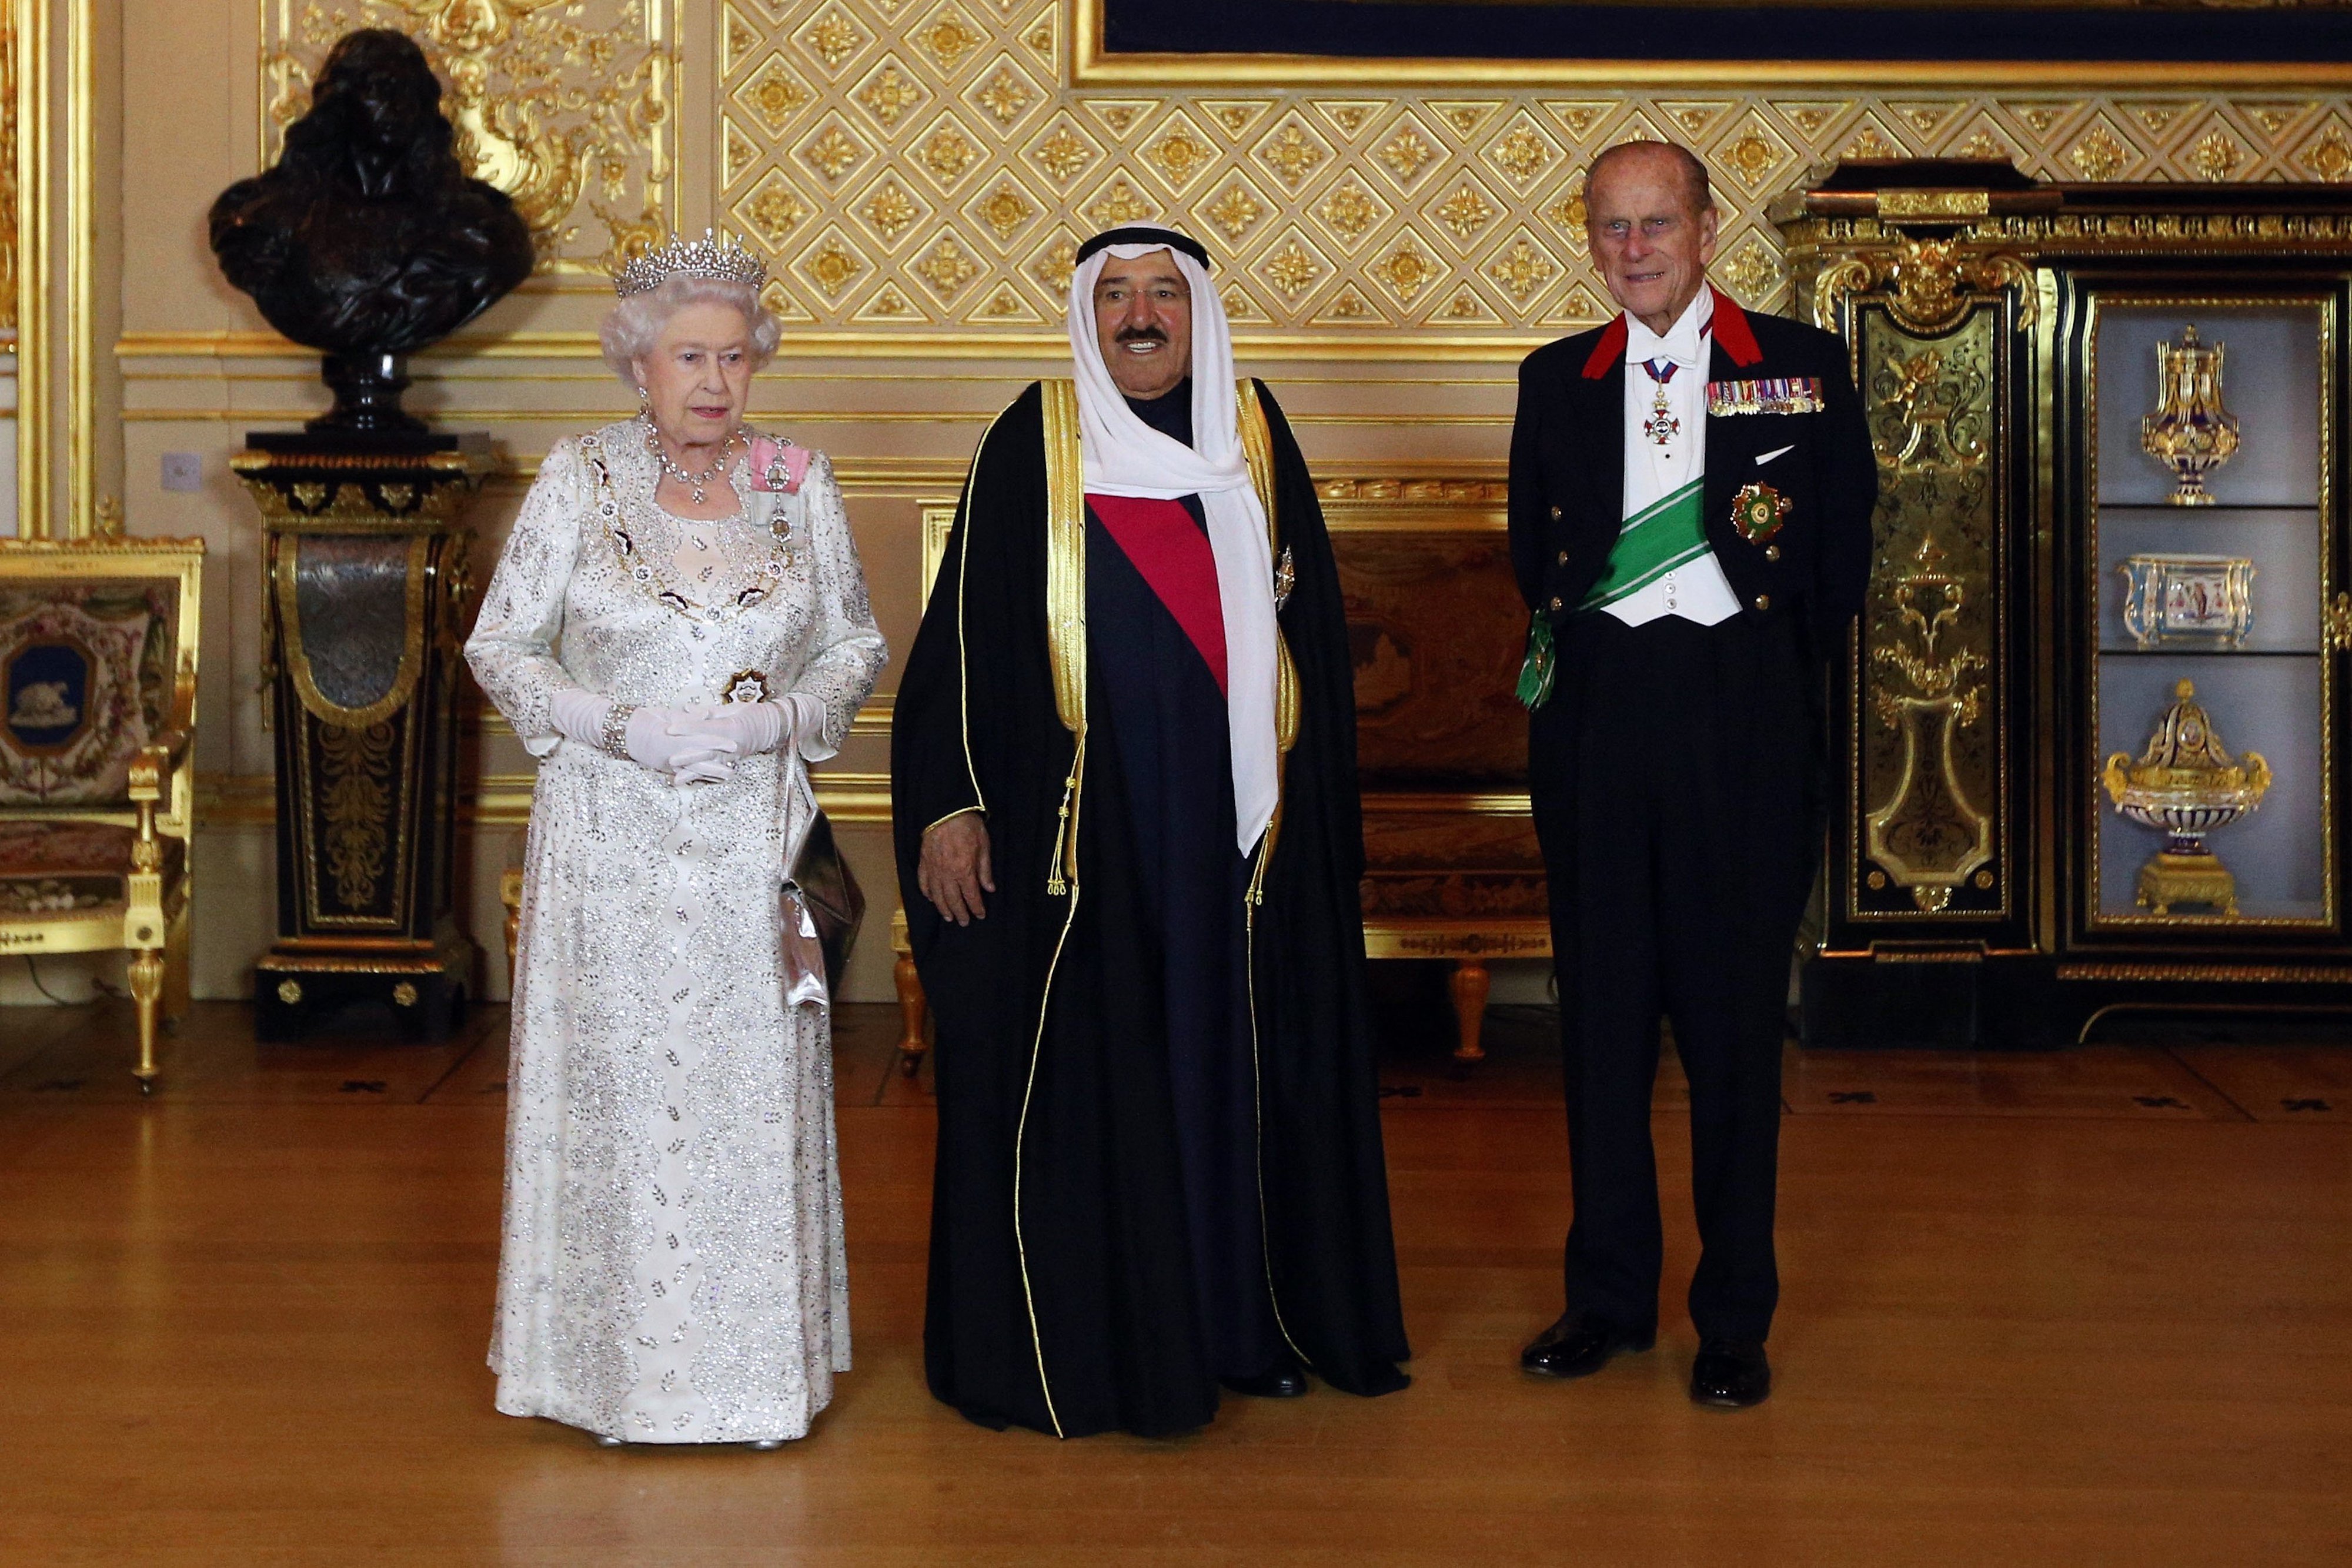 L’ex-émir du Koweït, cheikh Sabah al-Ahmad al-Jaber al-Sabah, pose avec la reine Elizabeth II et le prince Philip au château de Windsor en novembre 2012, avant un banquet d’État en l’honneur de la visite d’État de l’émir en Grande-Bretagne (AFP)